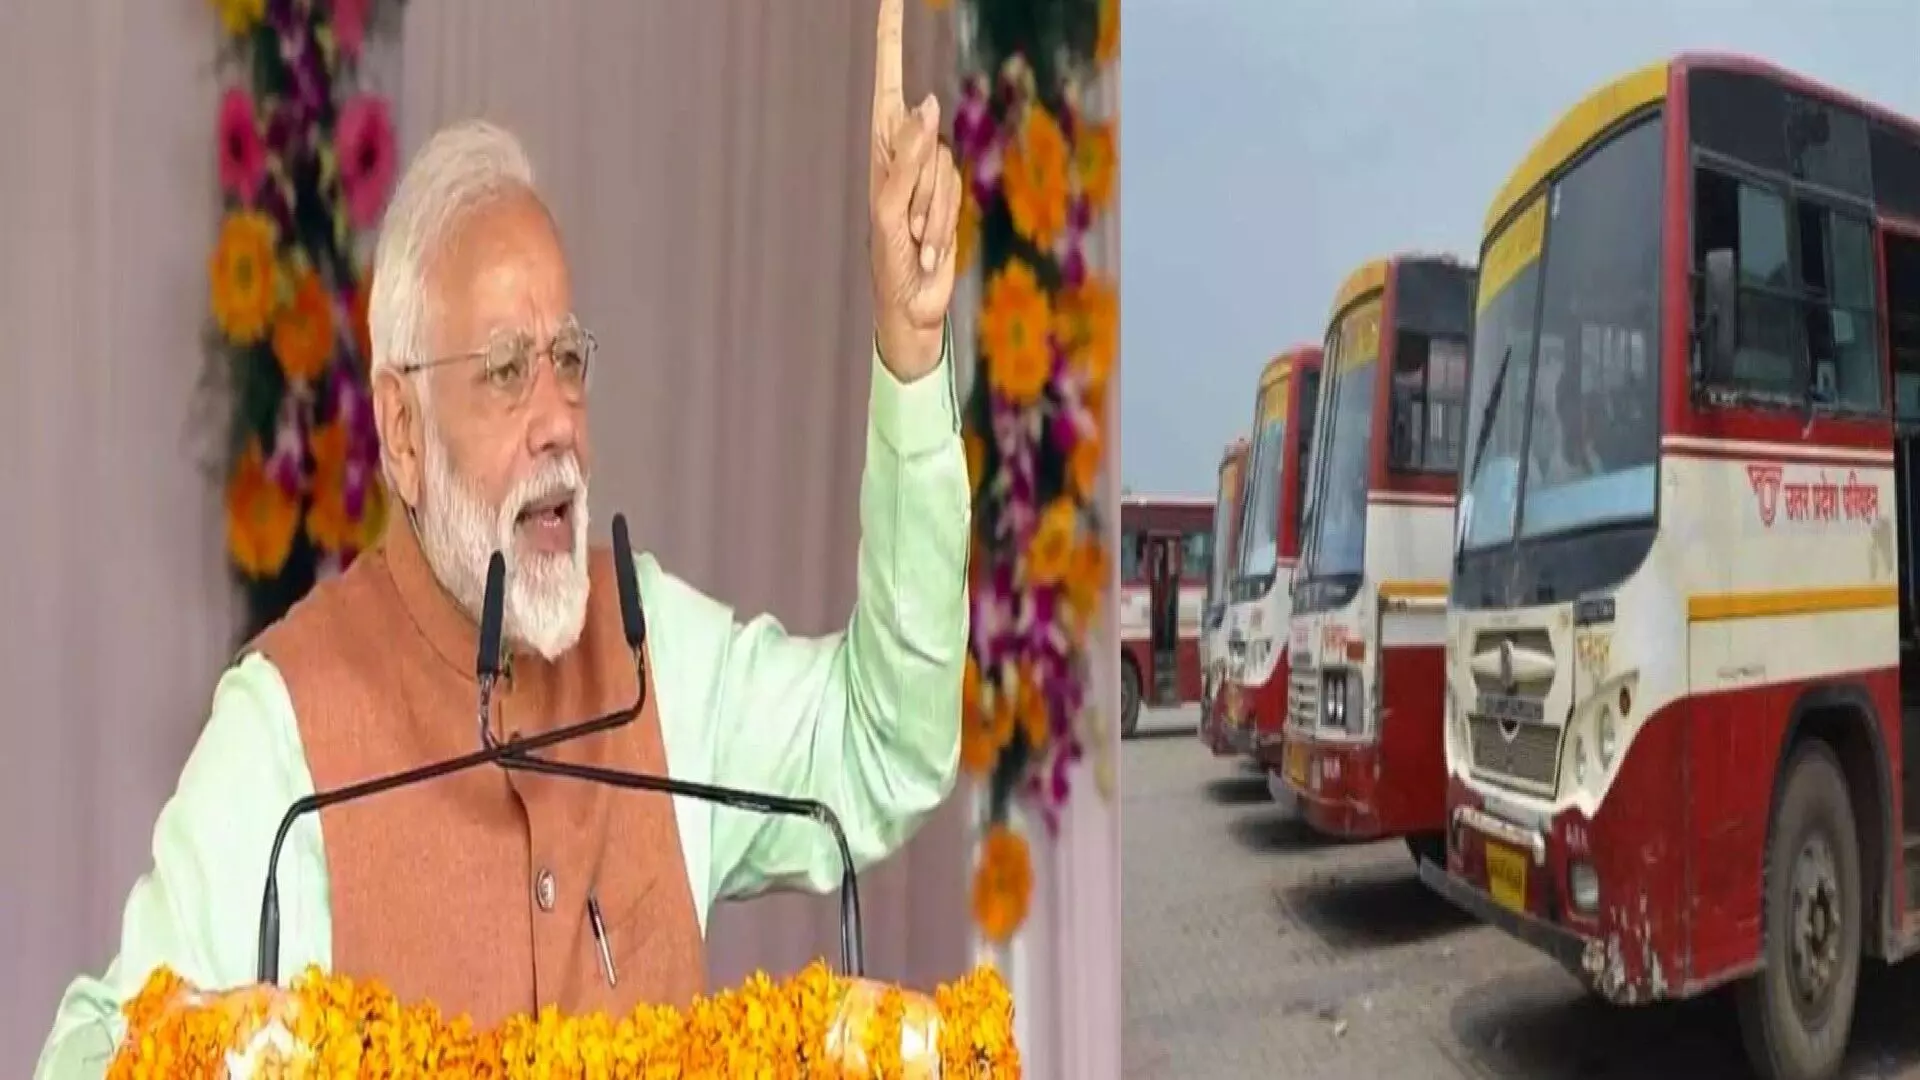 PM Modi Gorakhpur: गोरखपुर में PM मोदी के कार्यक्रम की तैयारियां, भीड़ लाने के लिए लगेगीं 1750 रोडवेज बसें, 3 लाख लोगों की भीड़ का दावा